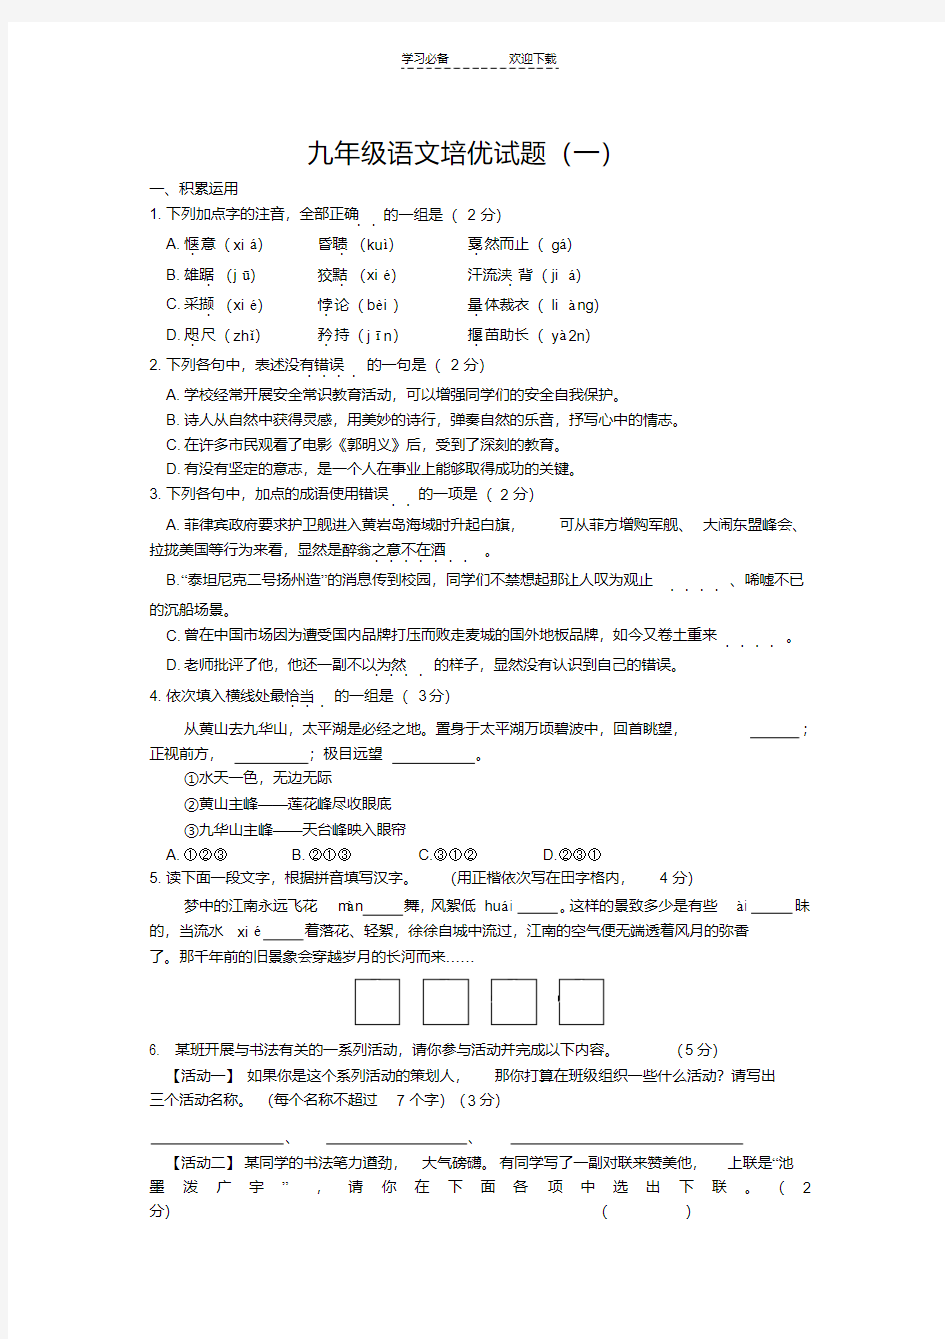 九年级语文培优试题(一)(20200424152747)